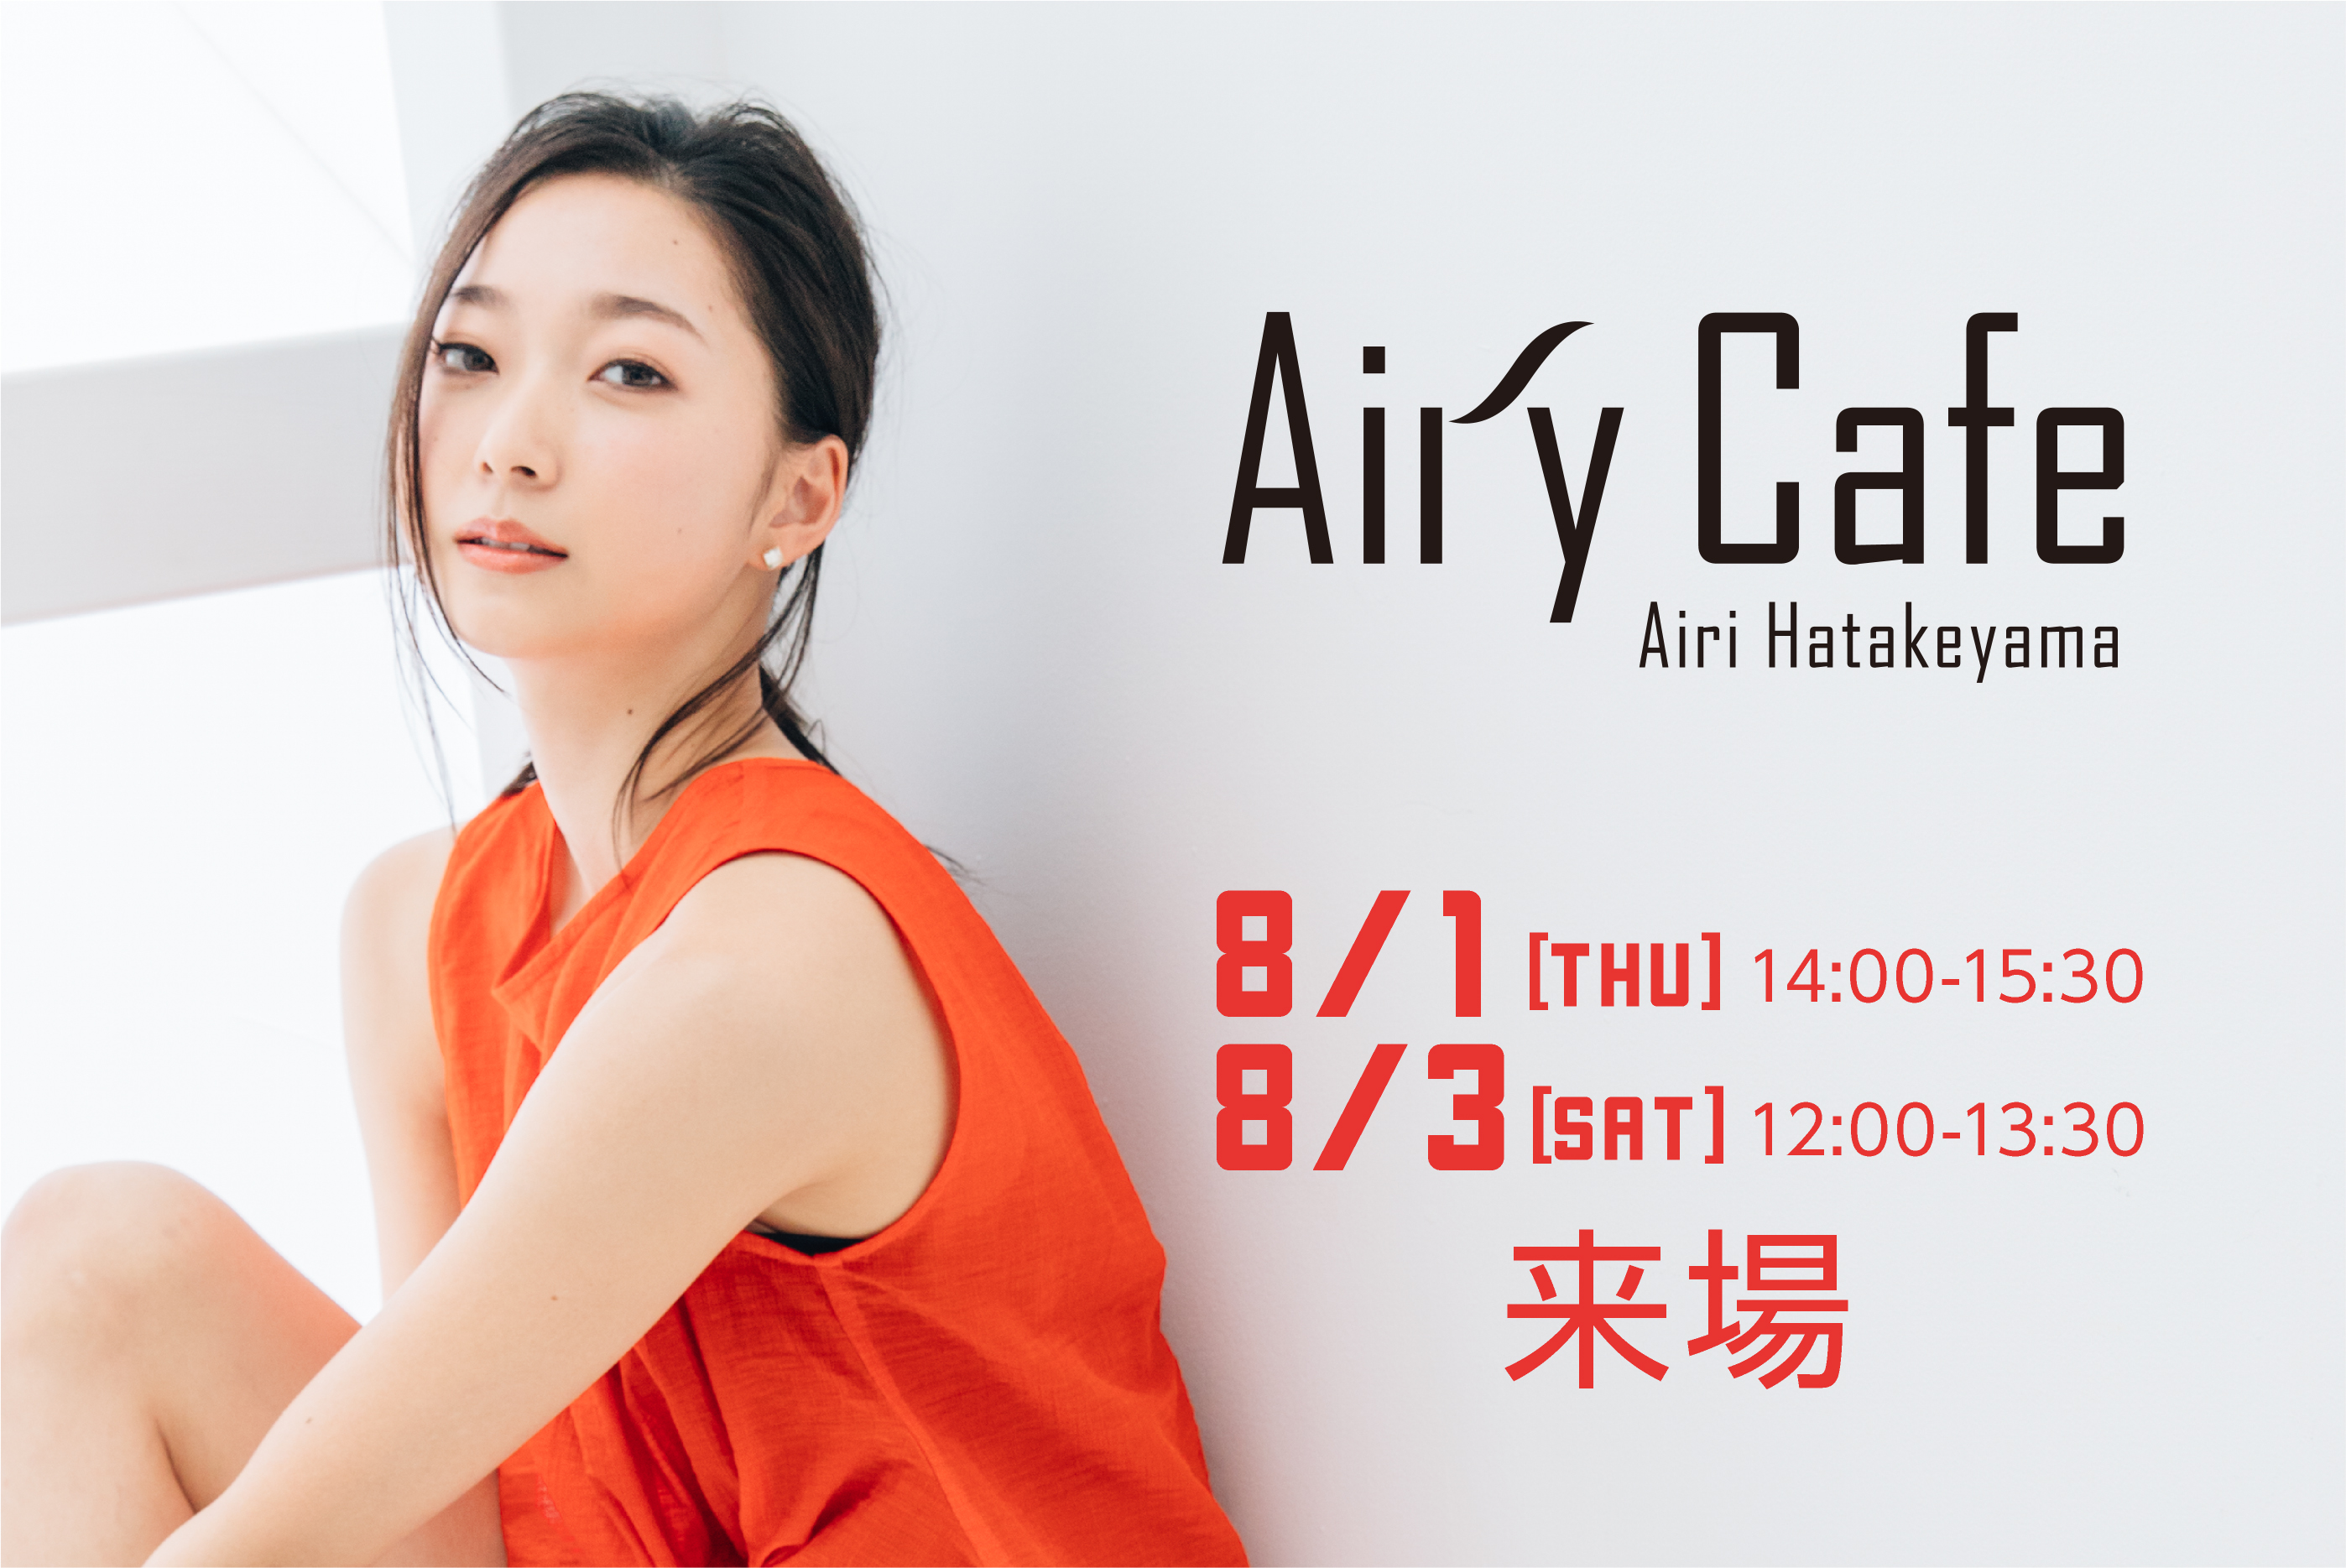 8/１(木)～9日(金) Airi Hatakeyama「Airy Cafe」